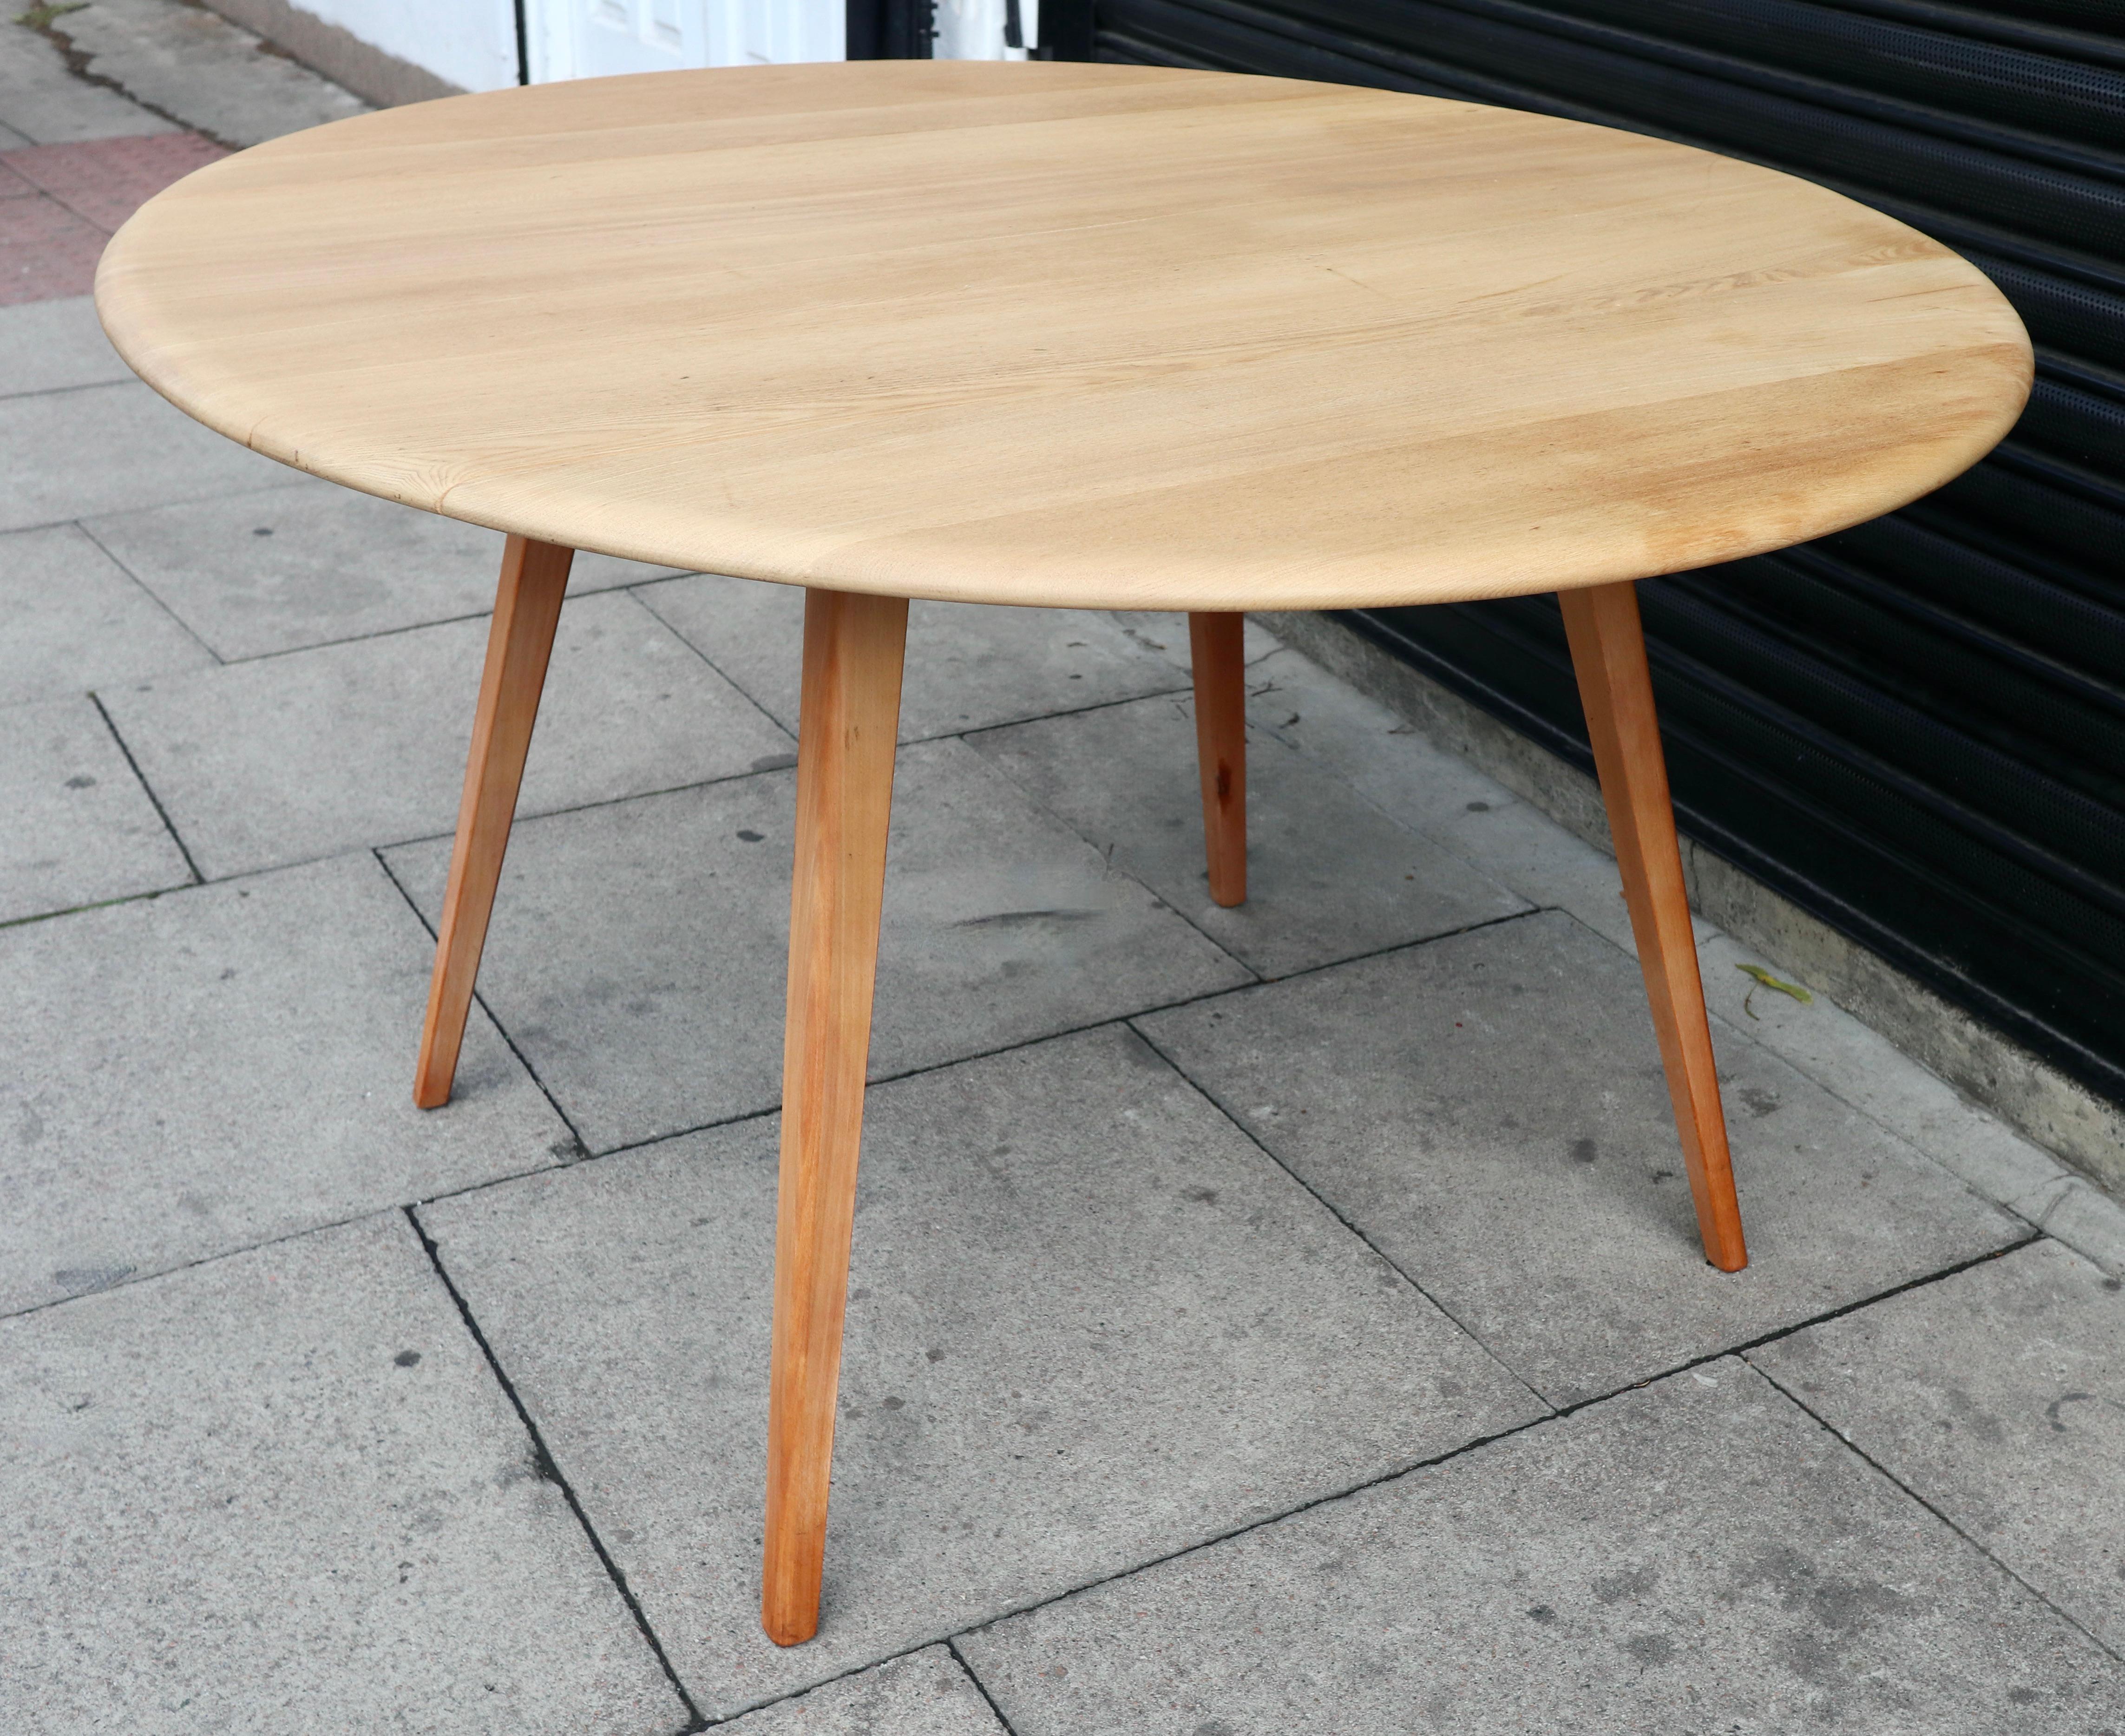 Ein runder/ovaler Esstisch mit Klappe aus den 1960er Jahren von Ercol.  Dieser Tisch hat eine Platte aus massivem Ulmenholz und ein vierbeiniges Untergestell aus massiver Buche. Er hat zwei Klapptische und ist in einem sehr guten Vintage-Zustand, da